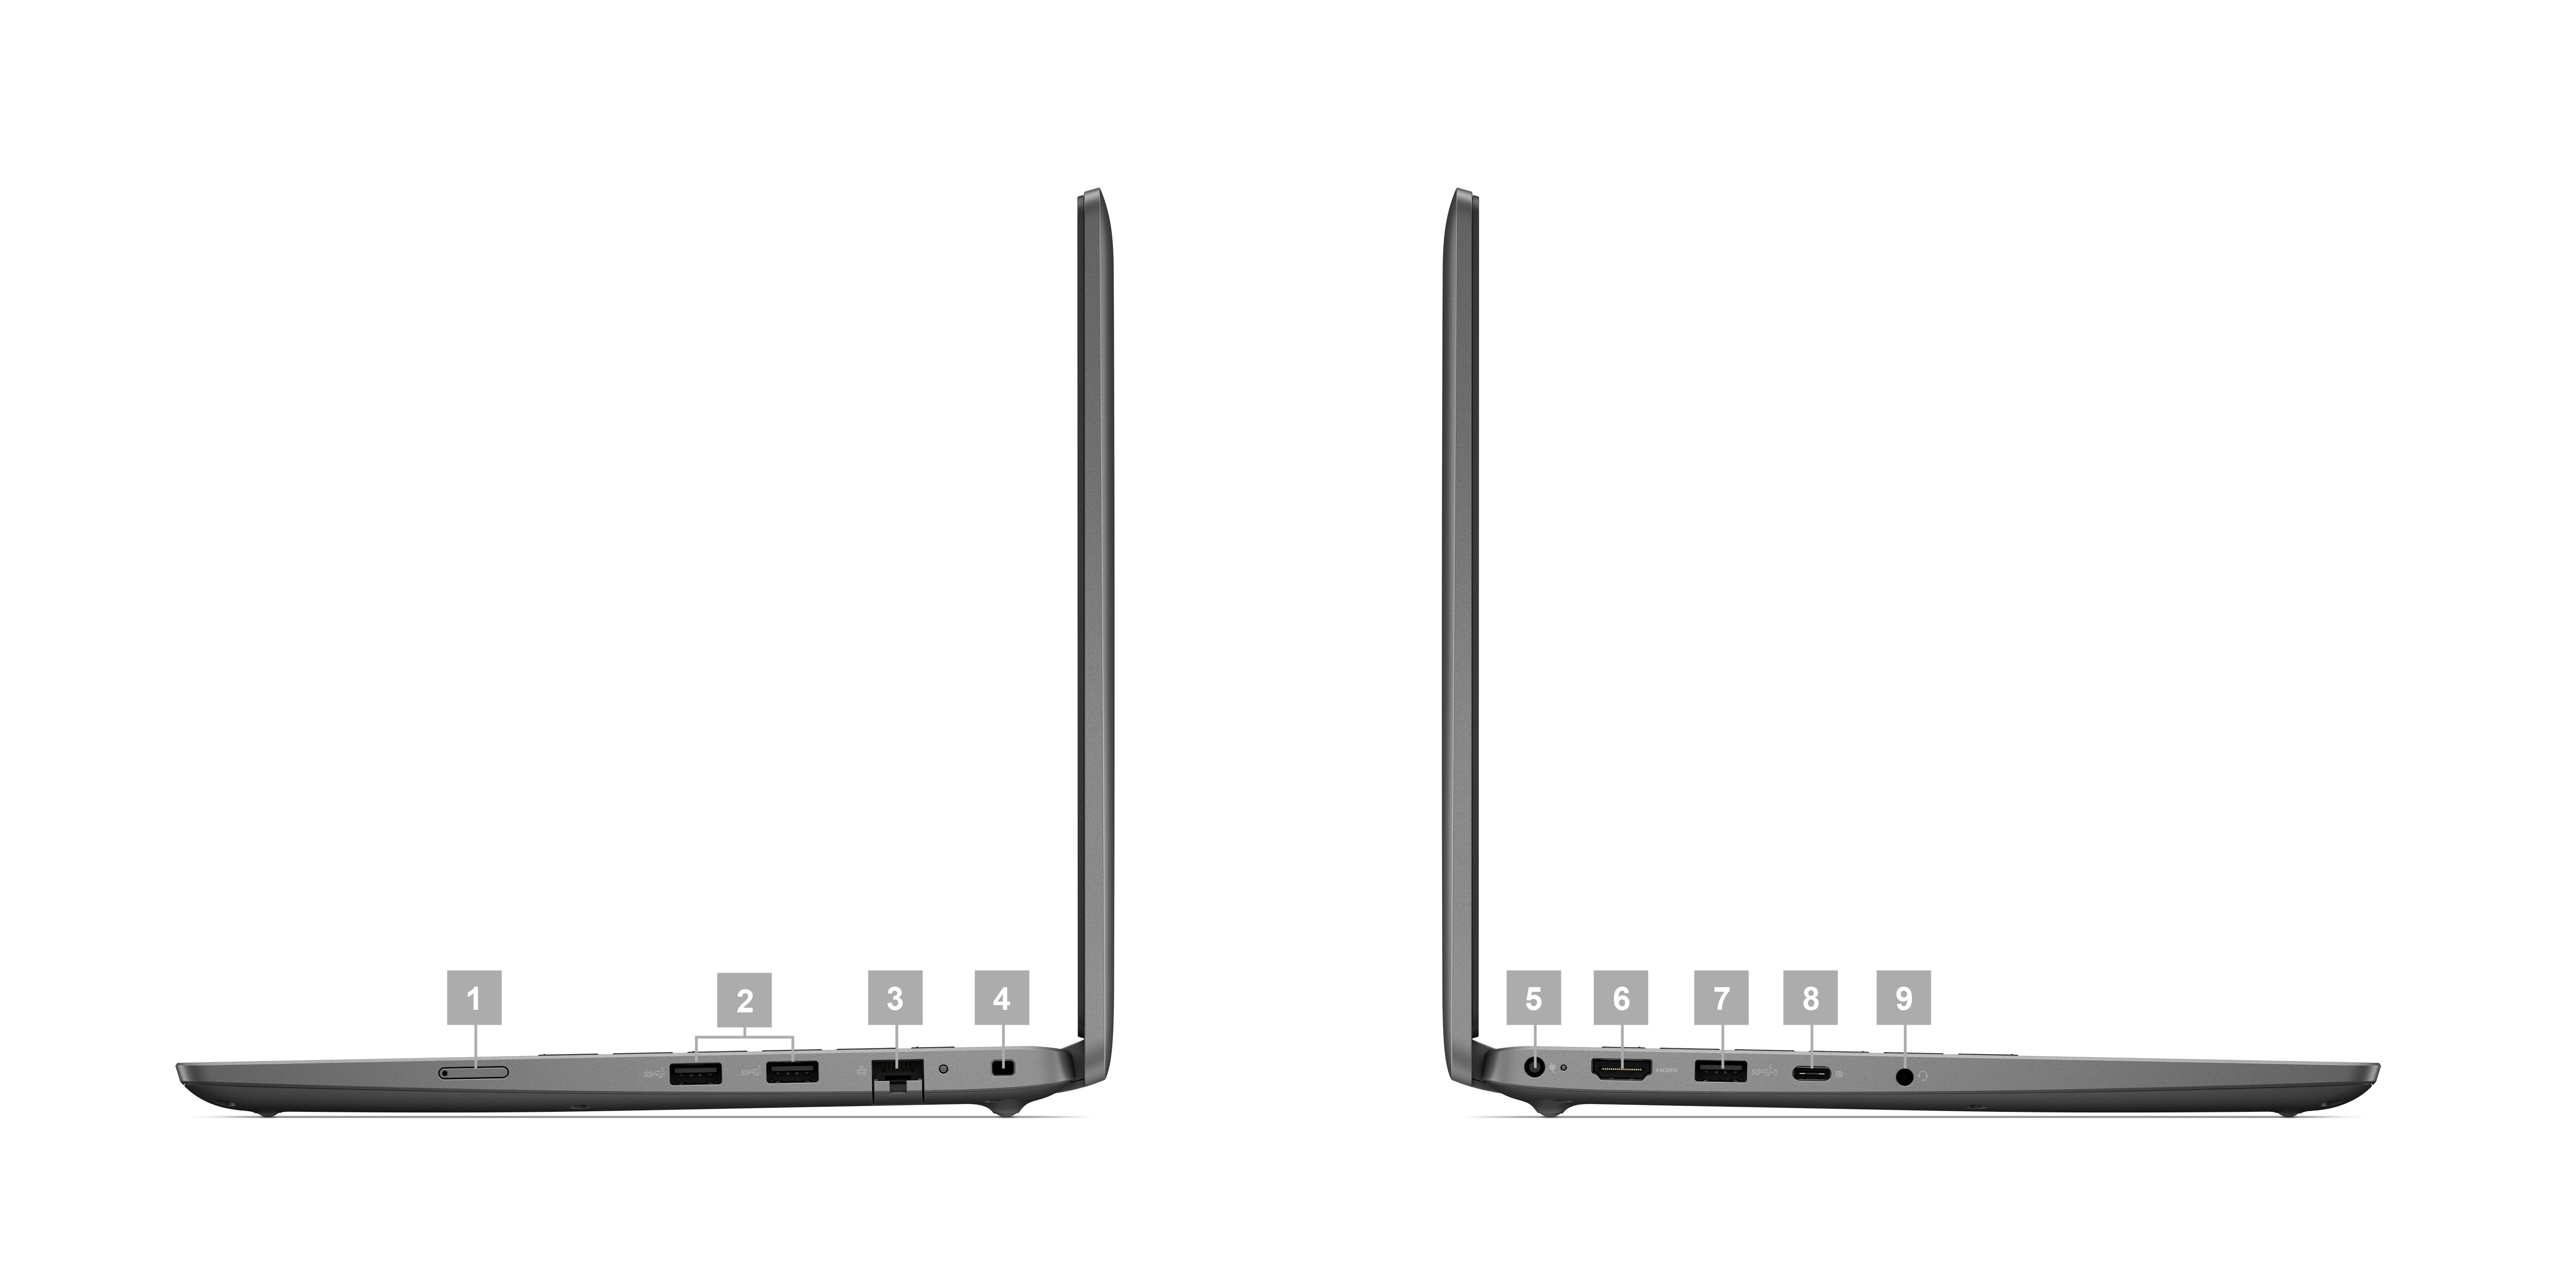 Dell Latitude 3440-Laptop mit Ziffern von 1 bis 9, die die Anschlüsse und Steckplätze am Produkt kennzeichnen.